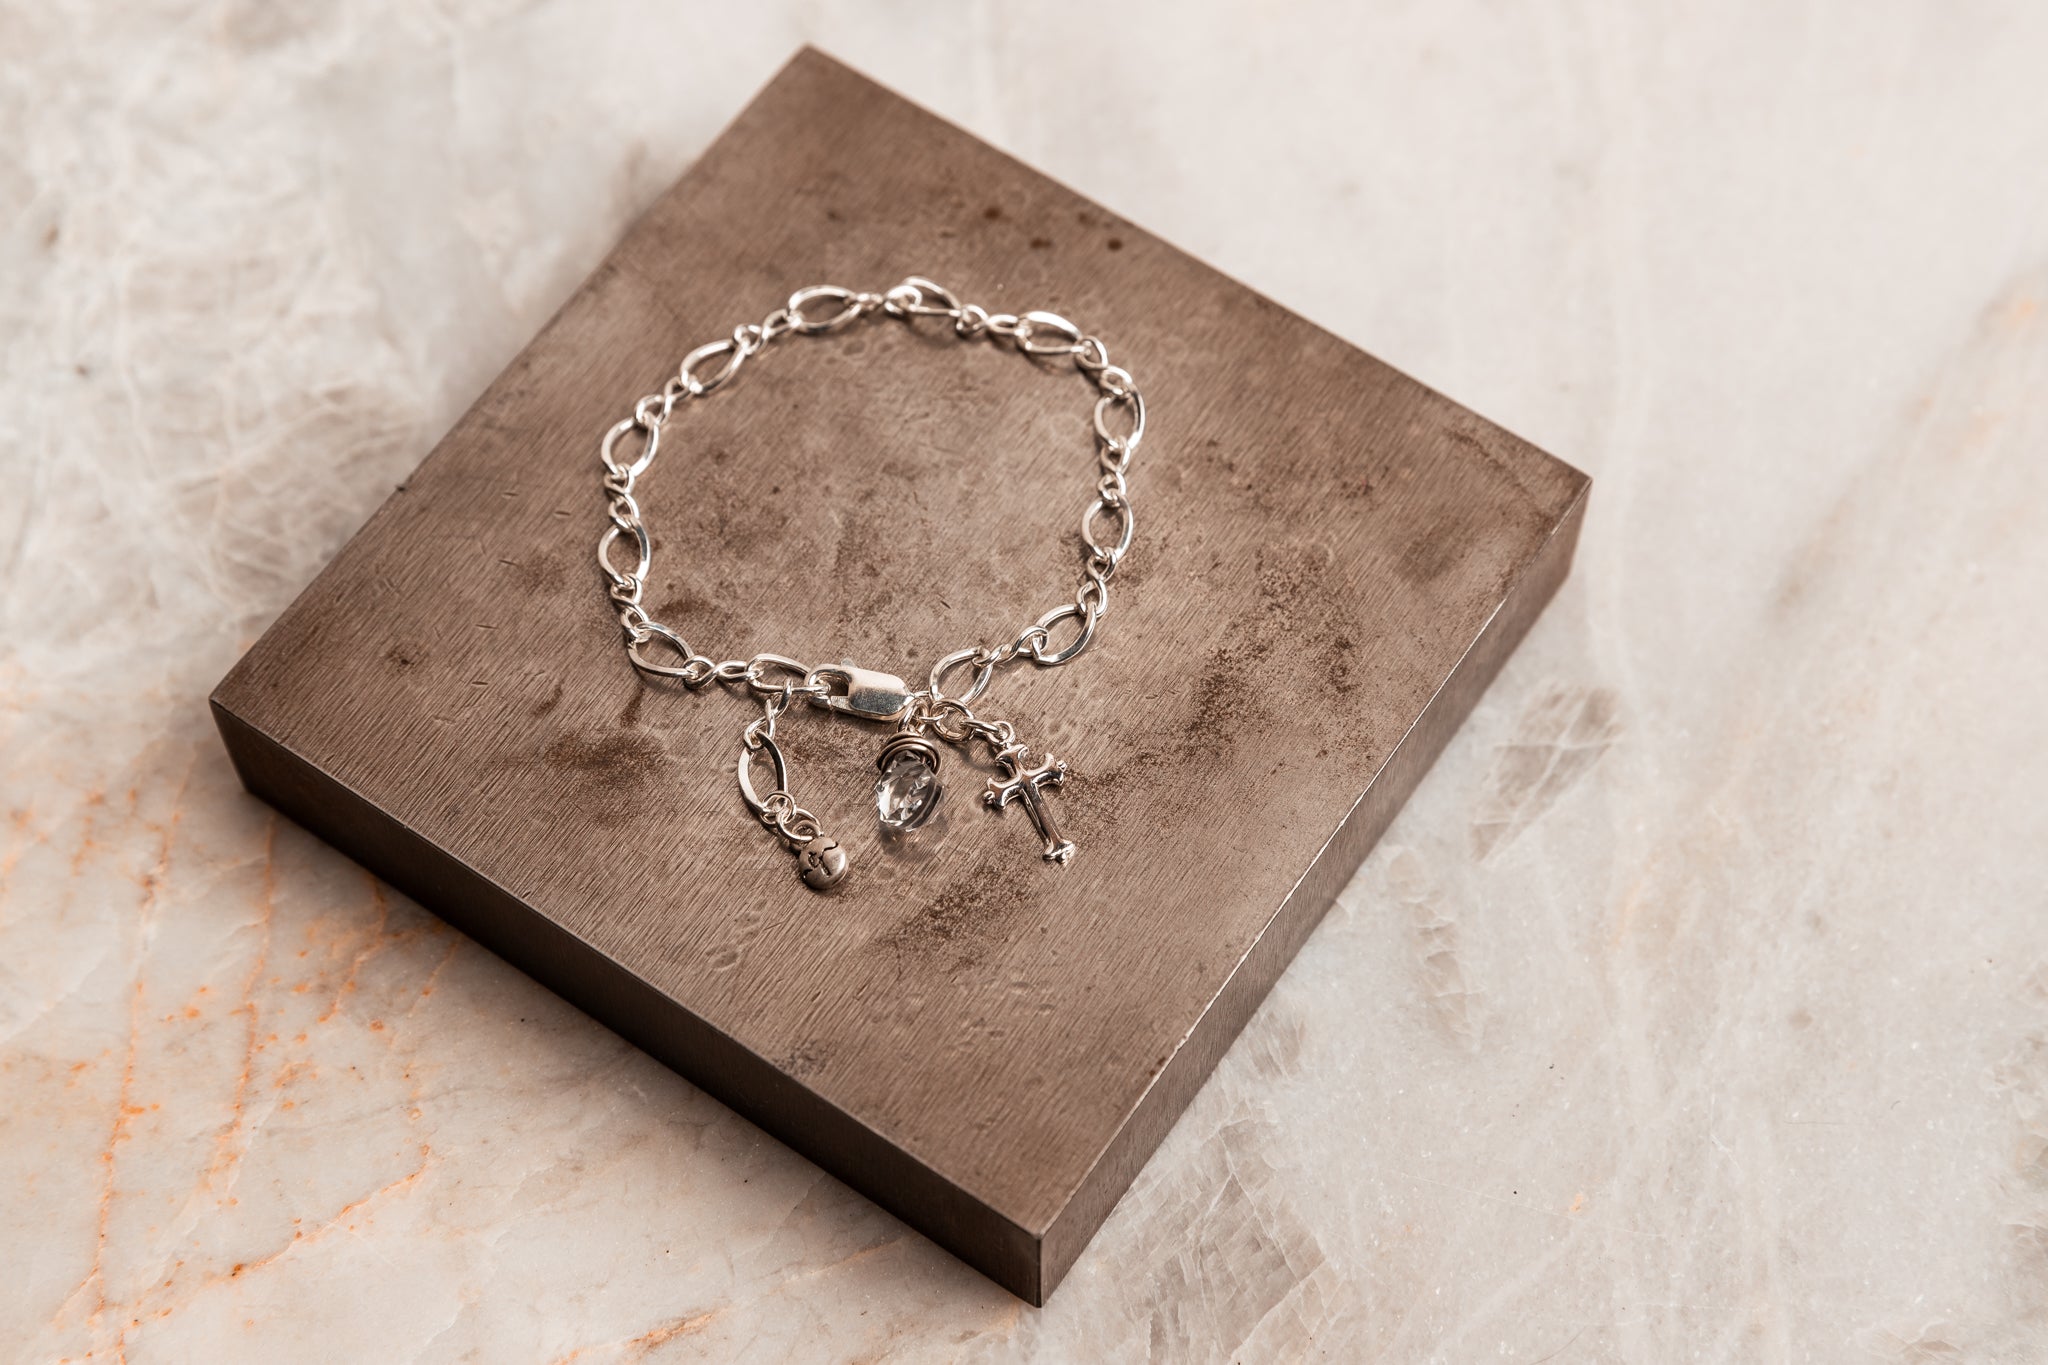 DUO JEWELLERY Bracelet brac775 | Silver Cross Charm Bracelet | Duo Jewellery